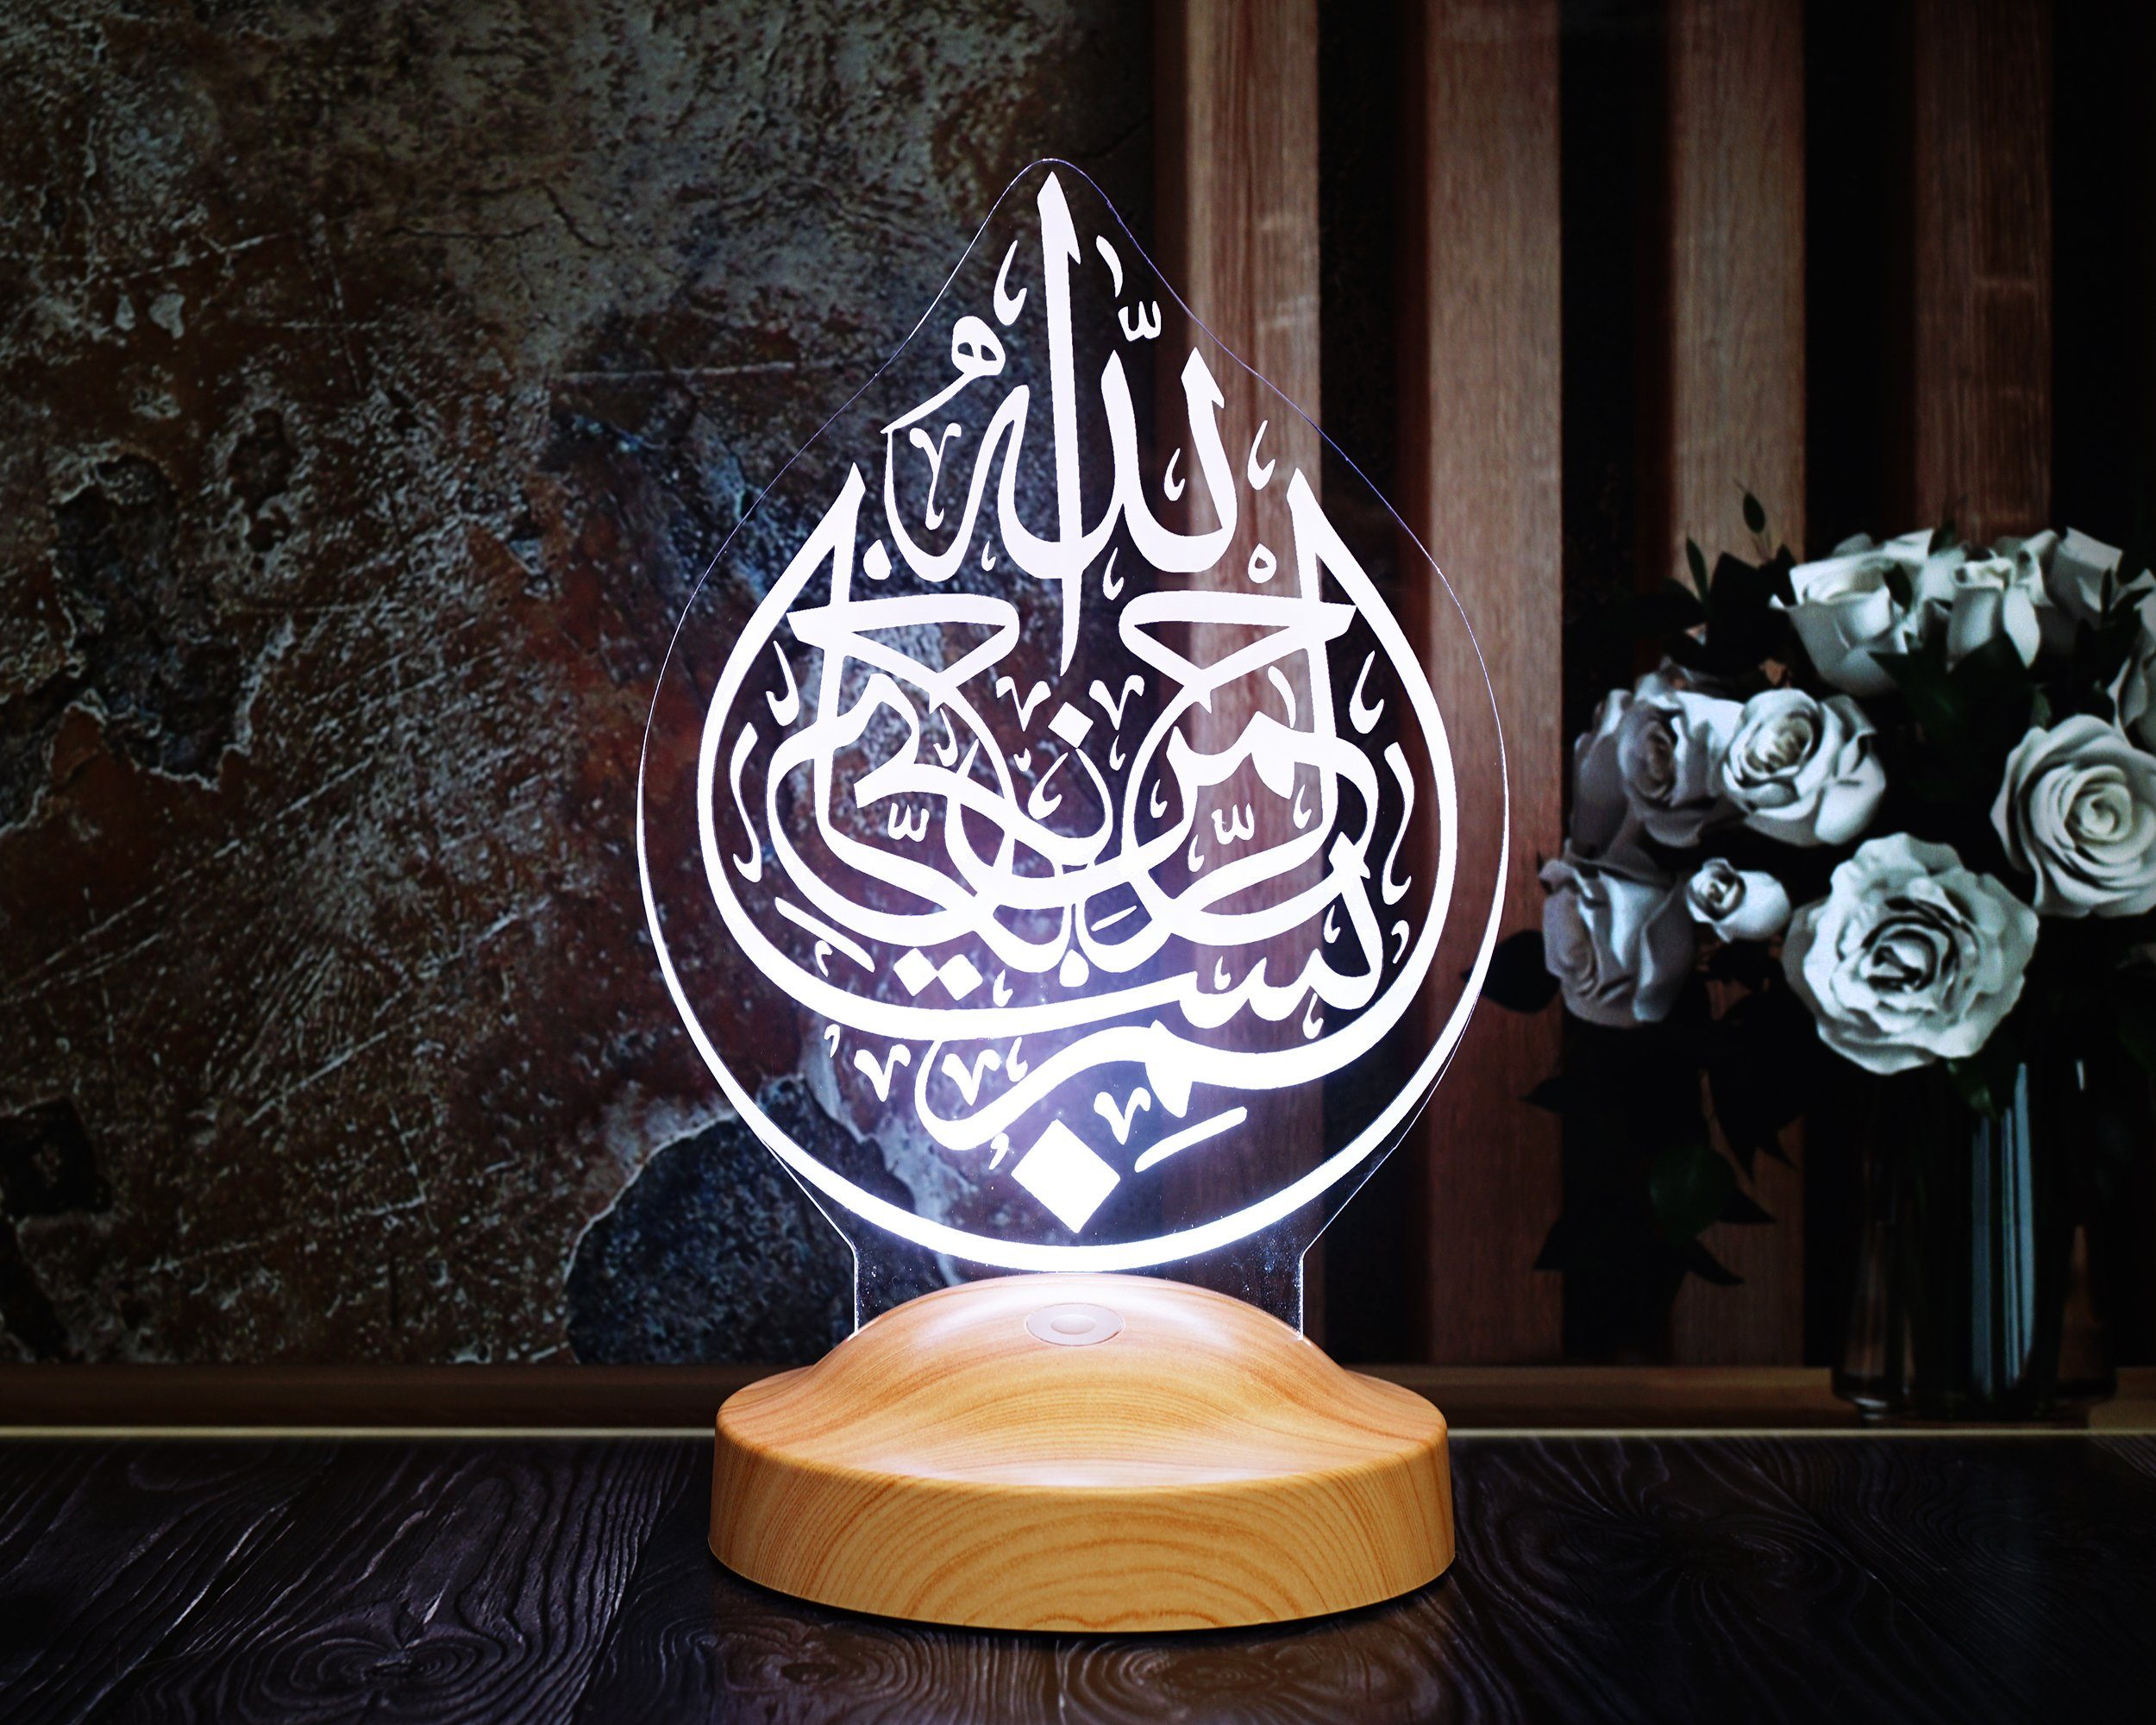 Personalisierte islamische Deko als Geschenk mit Kalligraphie